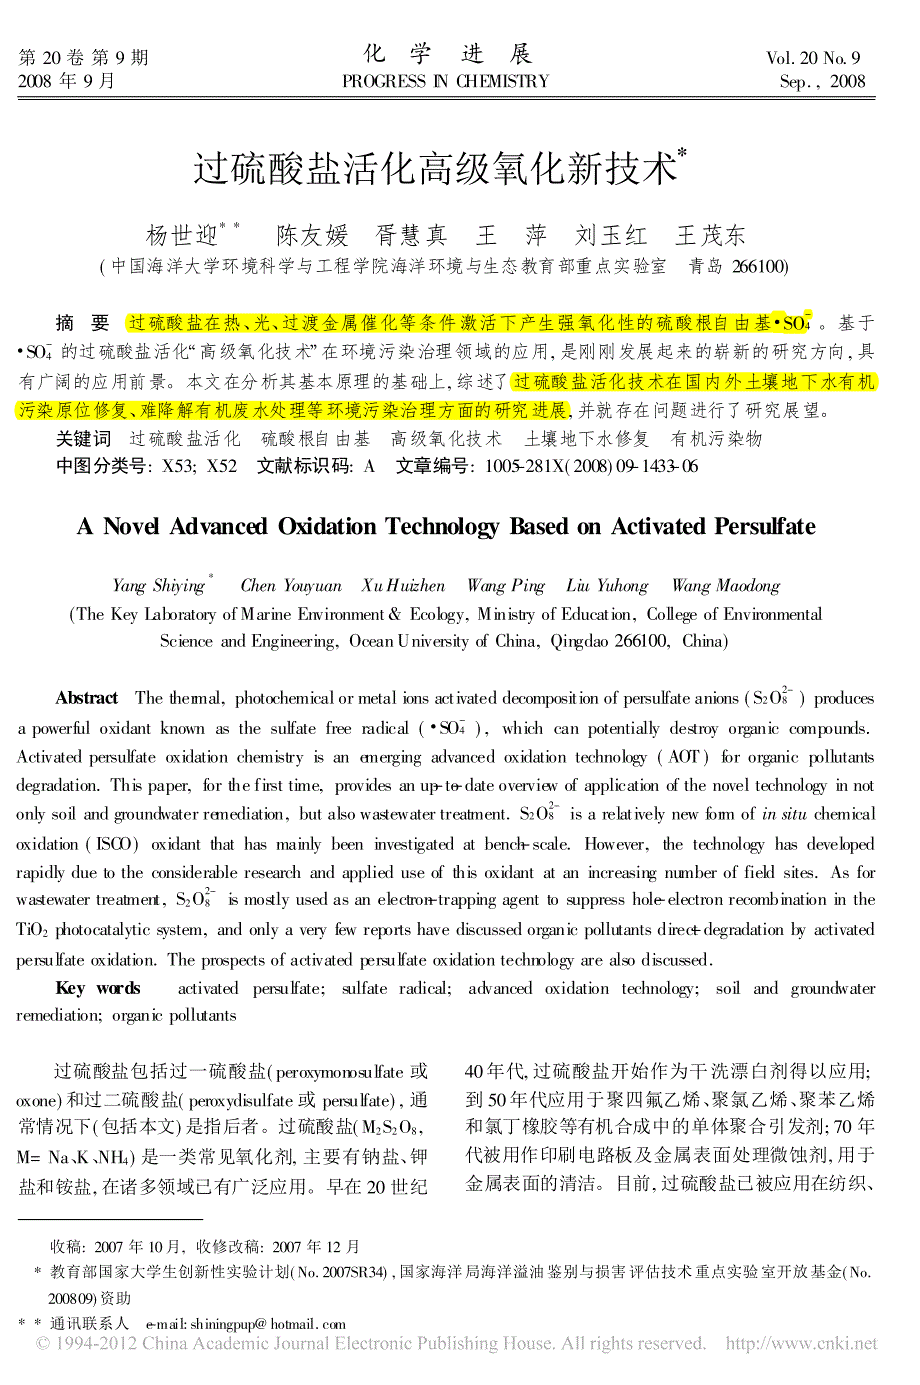 过硫酸盐活化高级氧化新技术_杨世迎_第1页